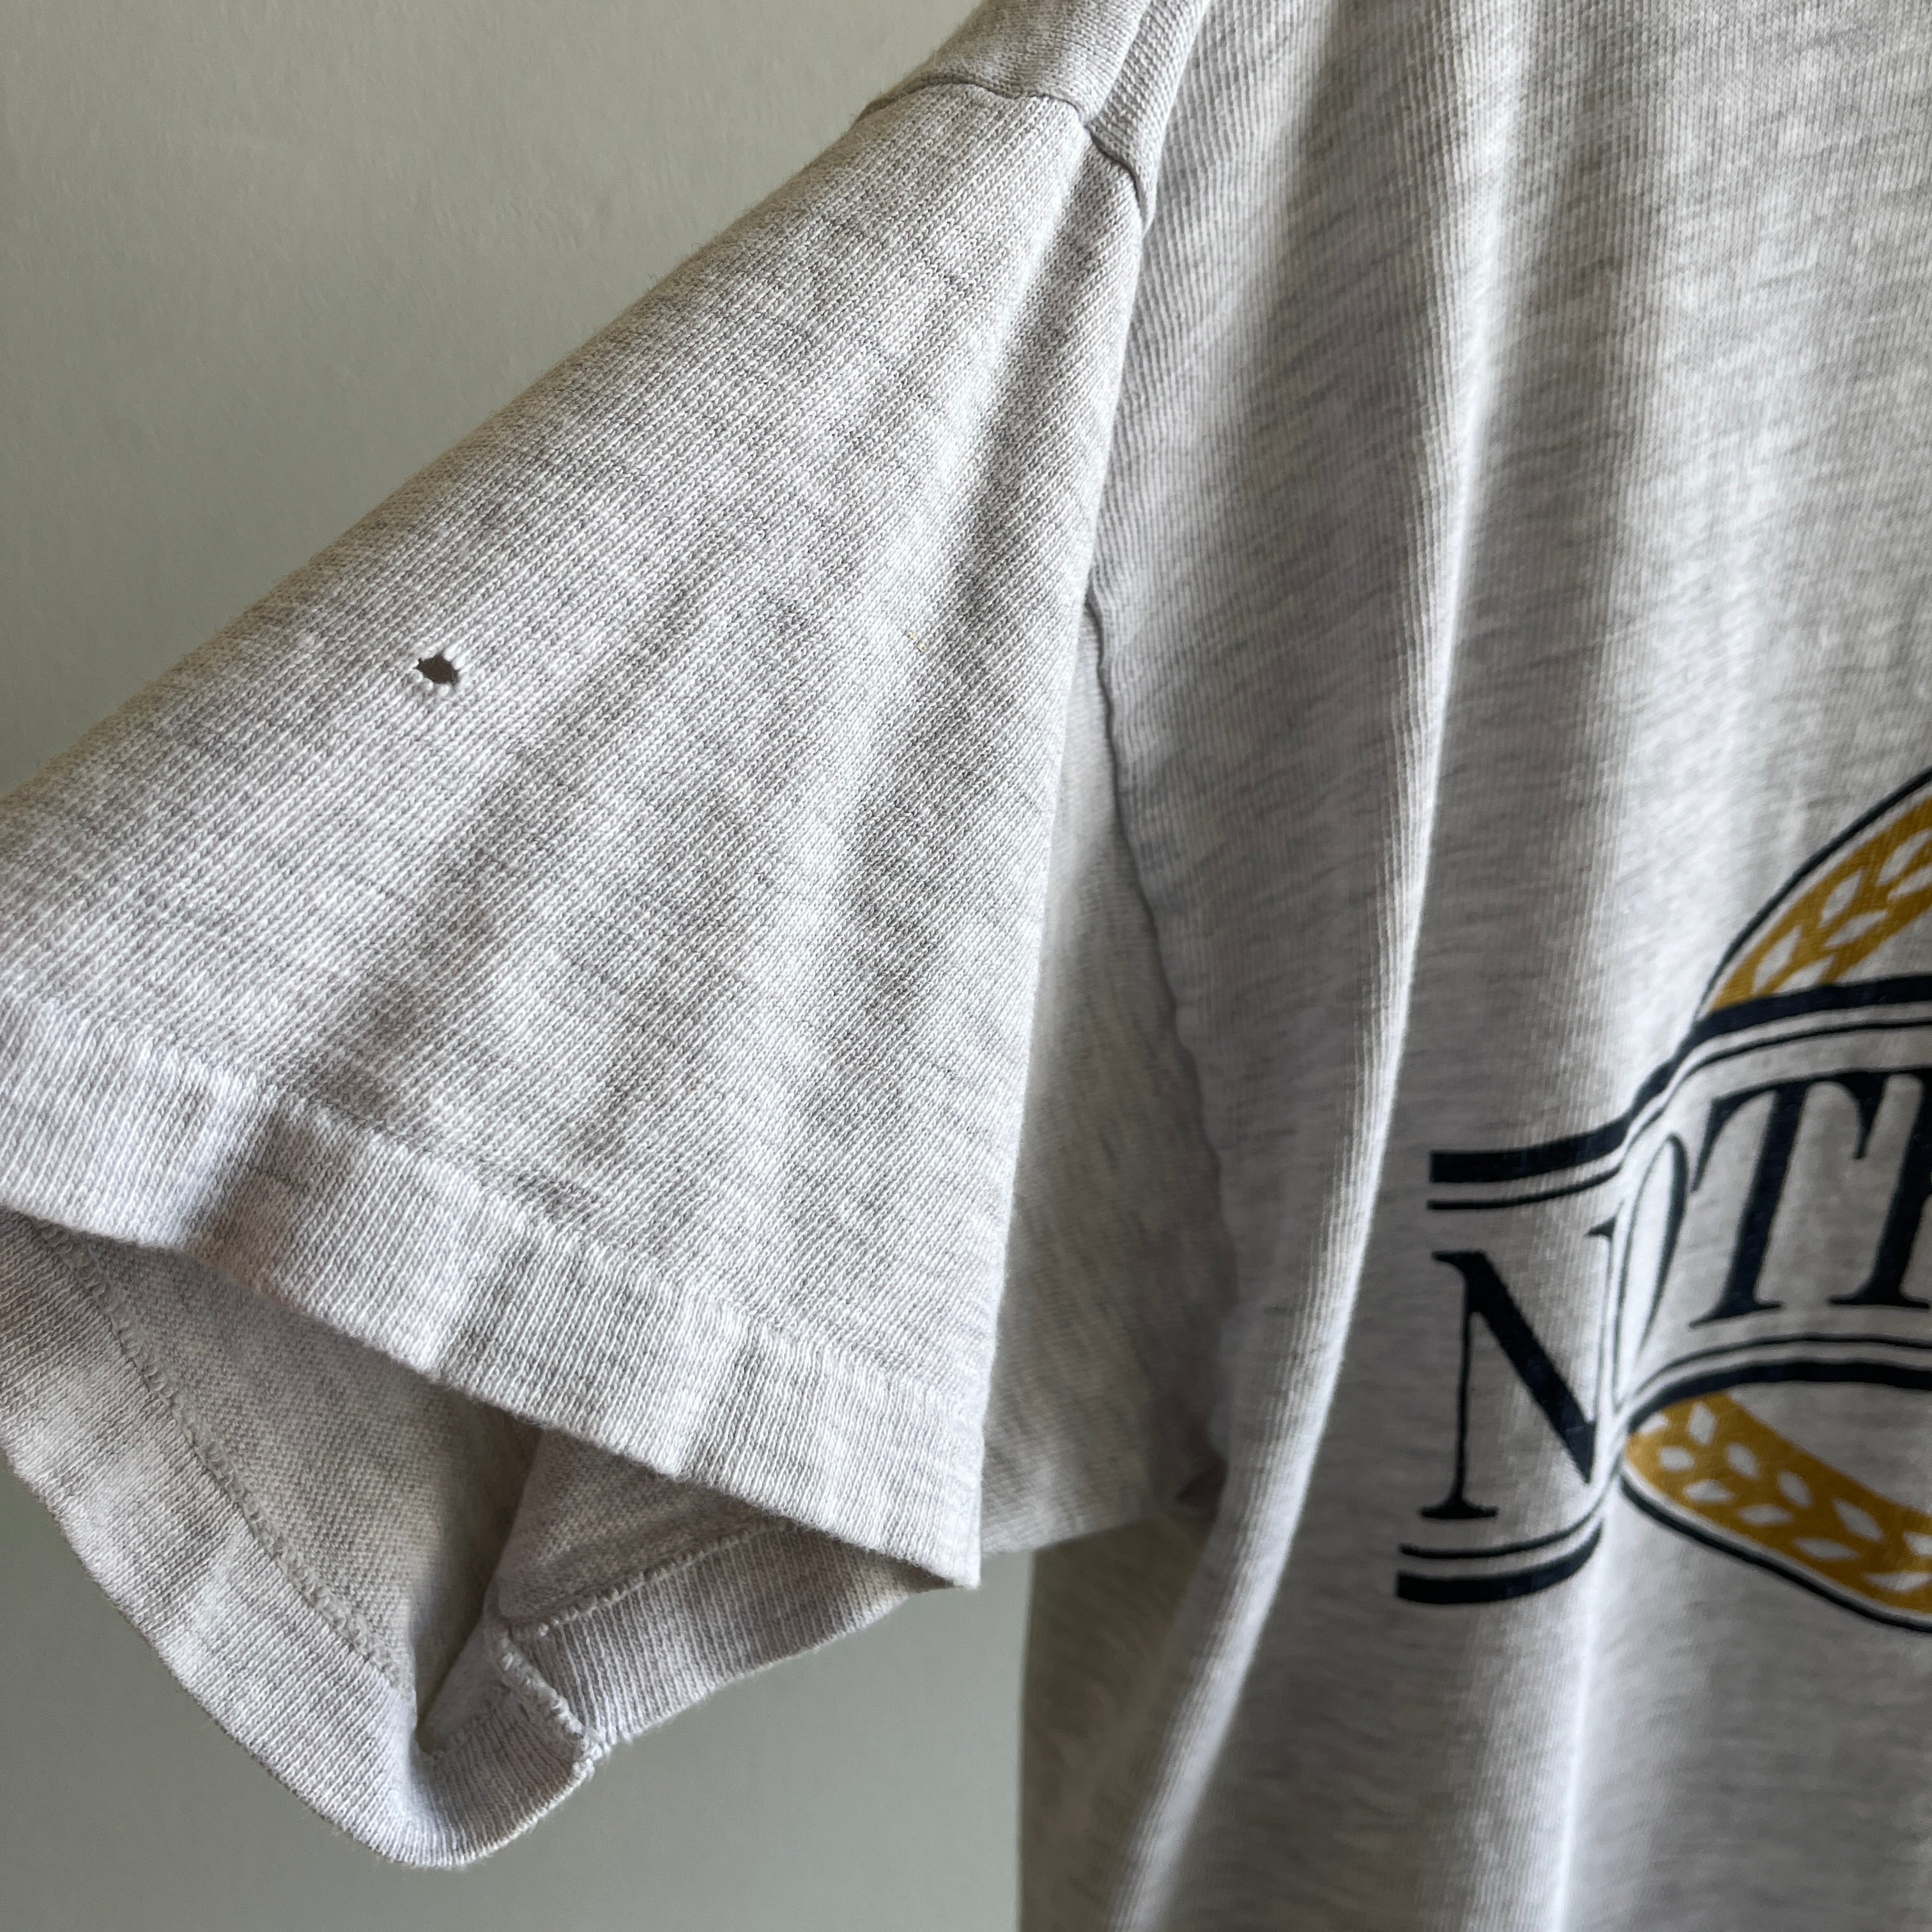 T-shirt de la marque Notre Dame Champion des années 1980 en lambeaux et déchirés - WOW